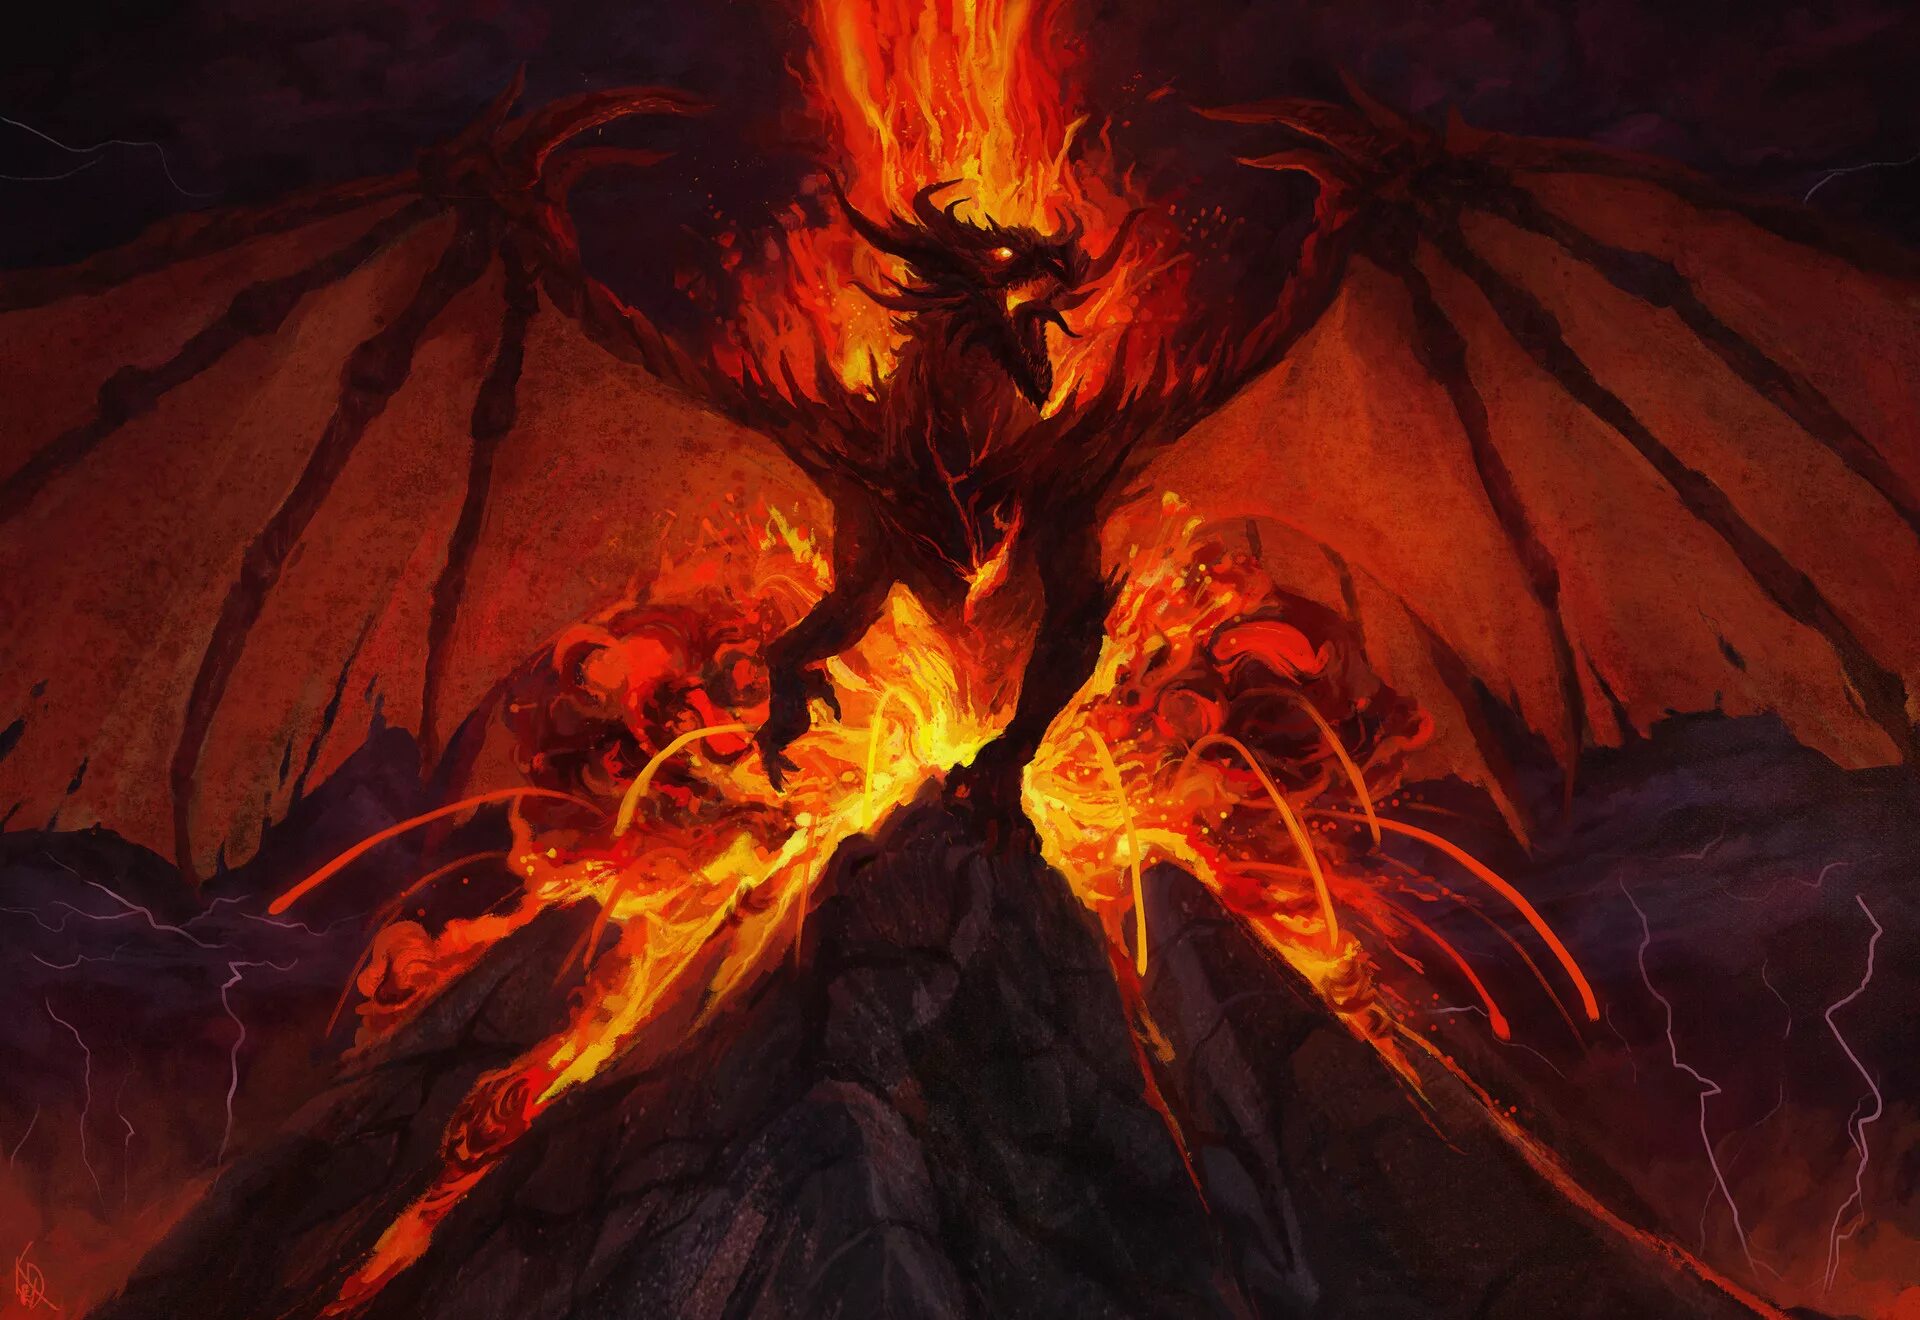 Ли бай: пламя преисподней 2019. Вулканический дракон МТГ. Огненный Элементаль дракон. Огненный Король Элементаль. Дракон темного пламени